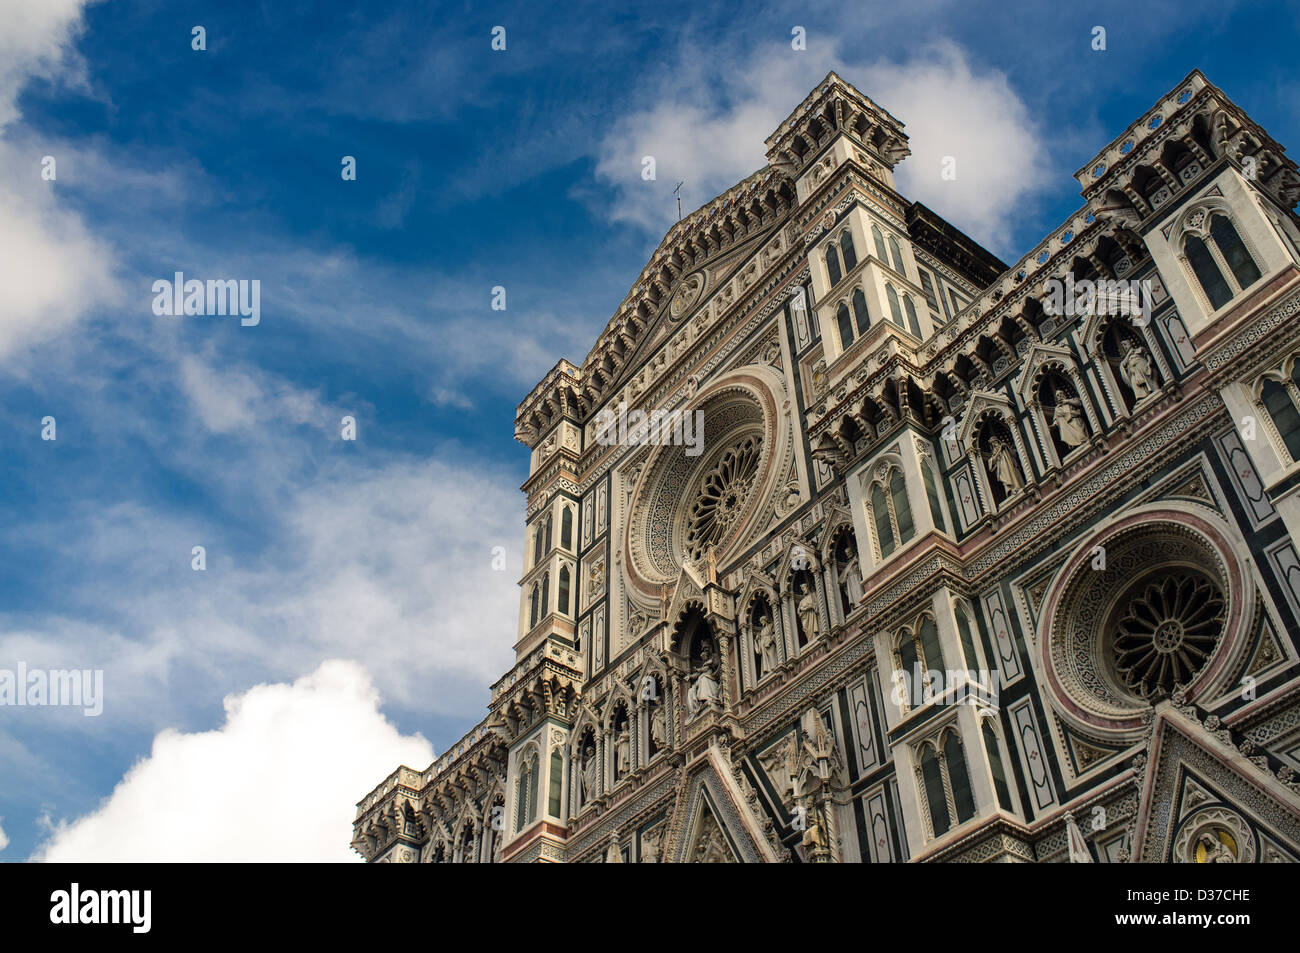 The Basilica di Santa Maria del Fiore, or Duomo, in Florence, Italy Stock Photo